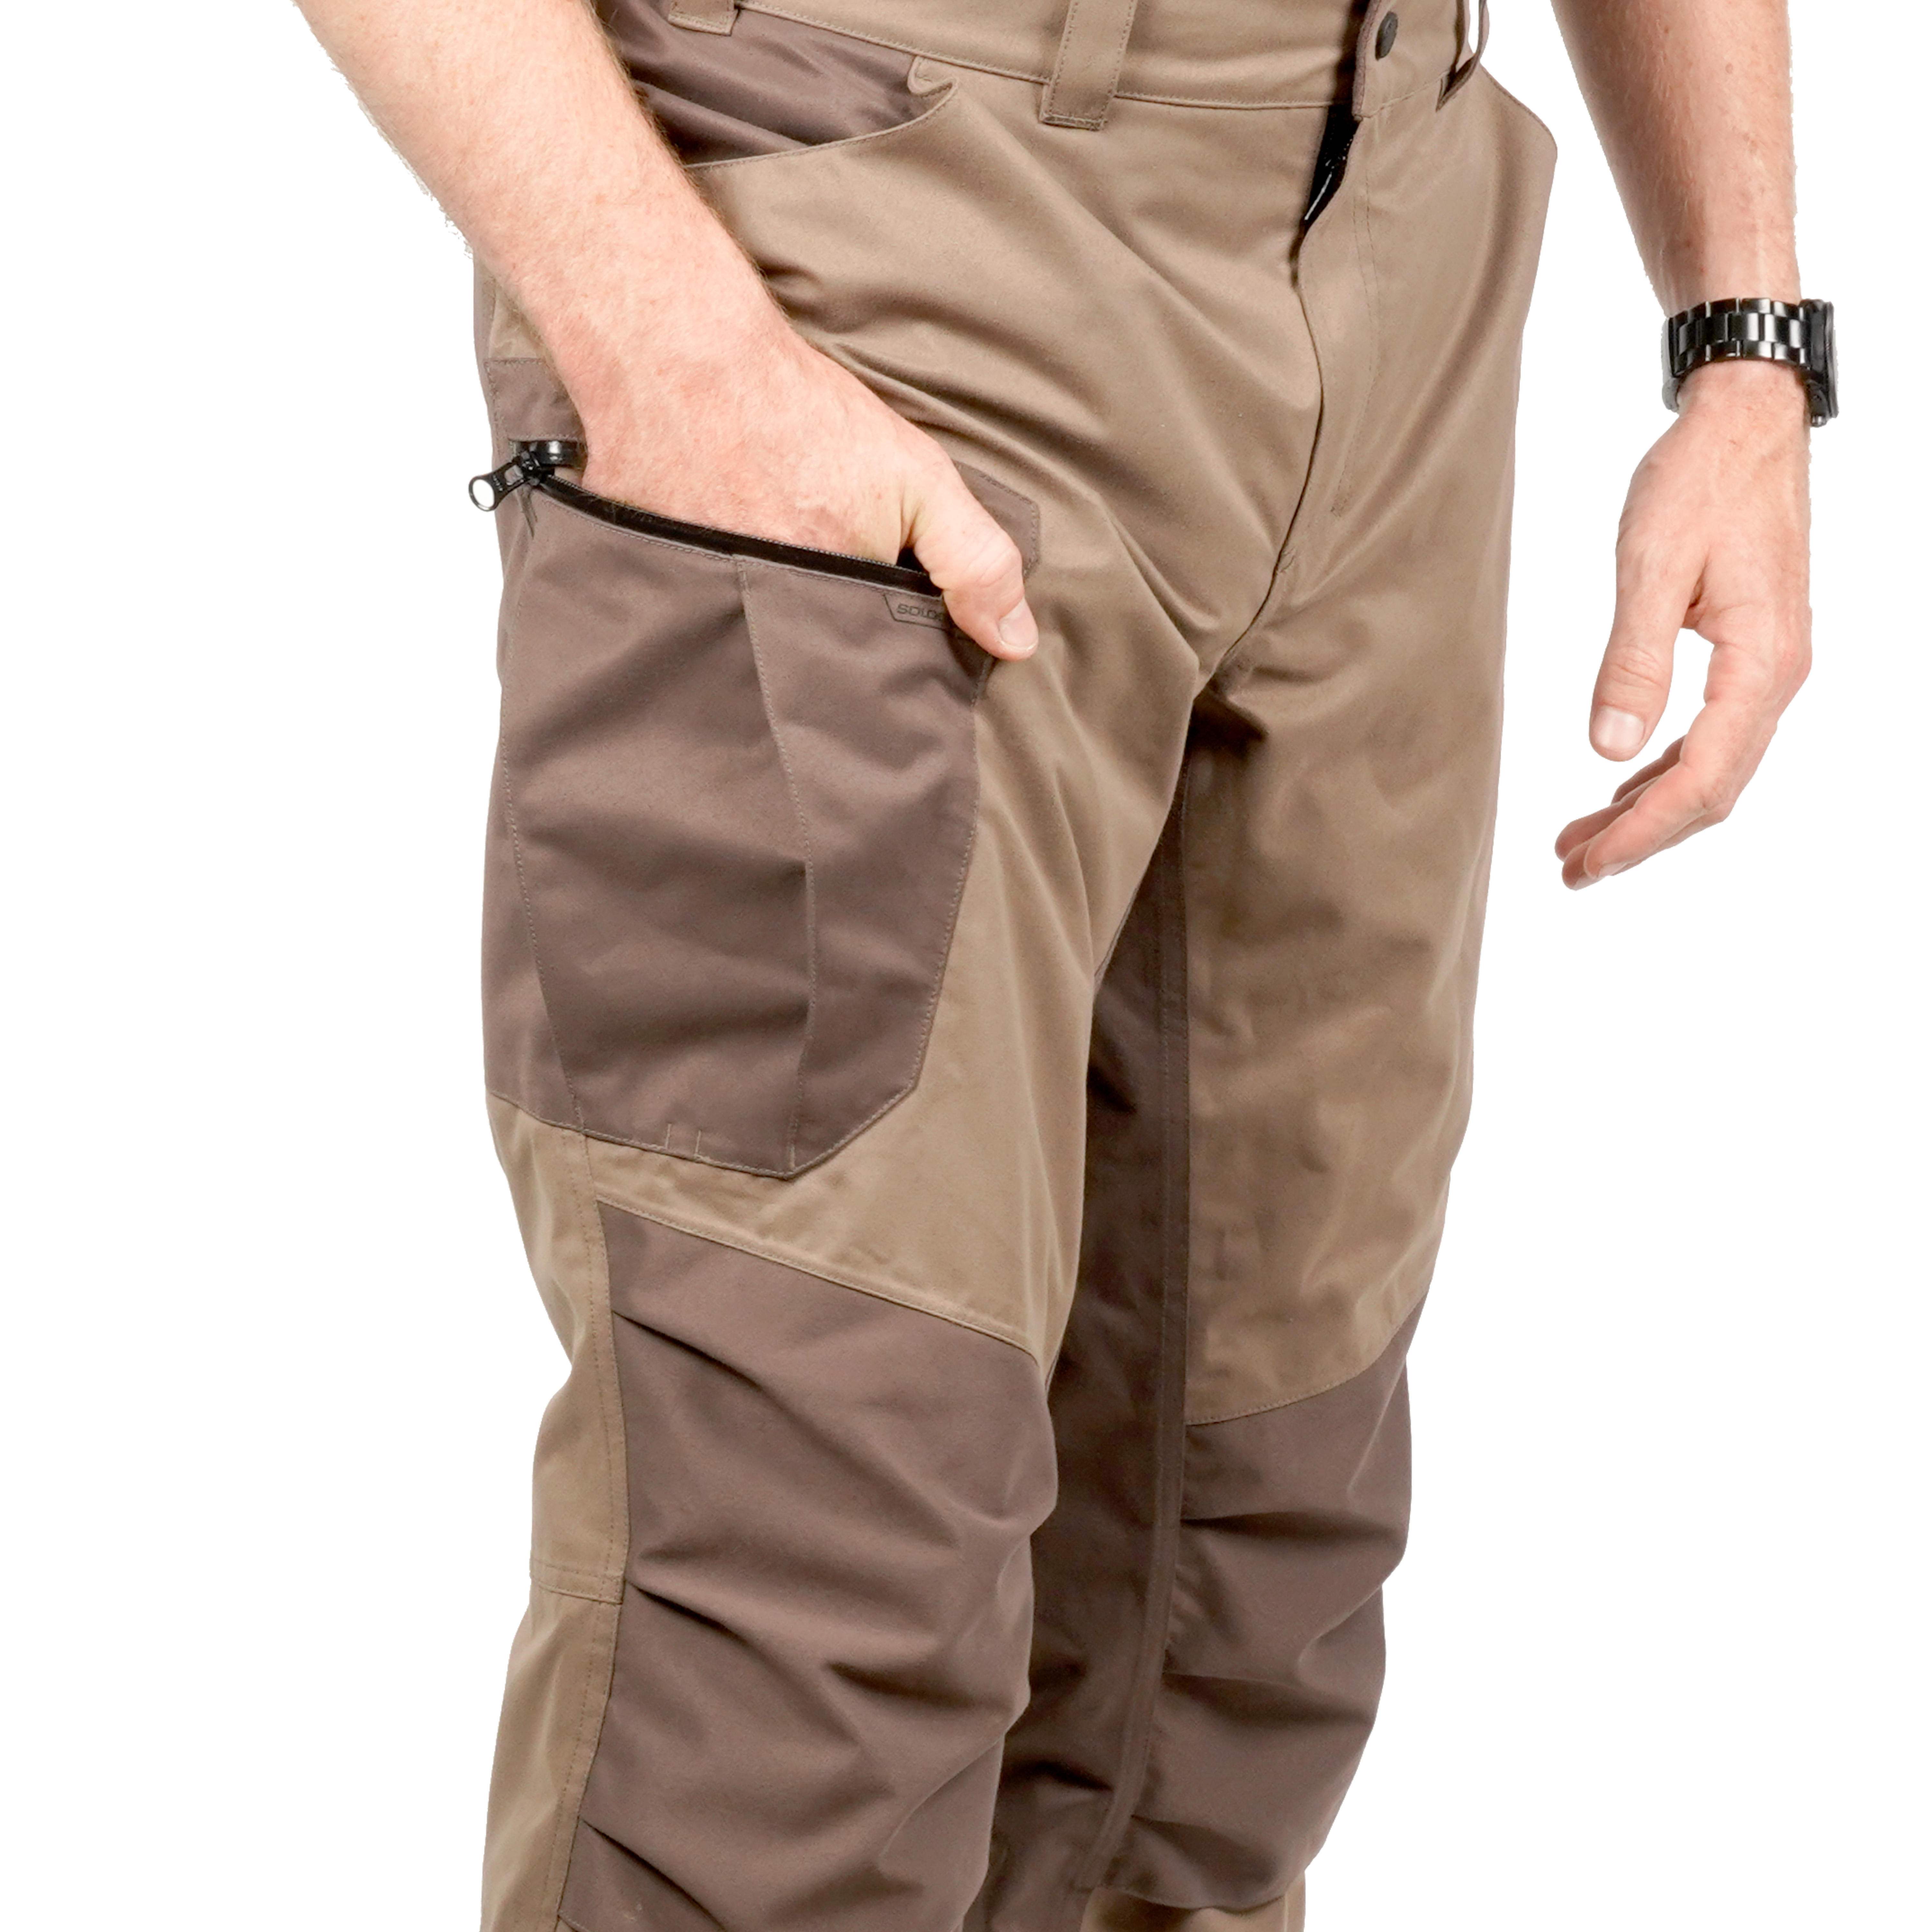 Pantalon Chasse Imperméable Chaud Silencieux 520 - SOLOGNAC